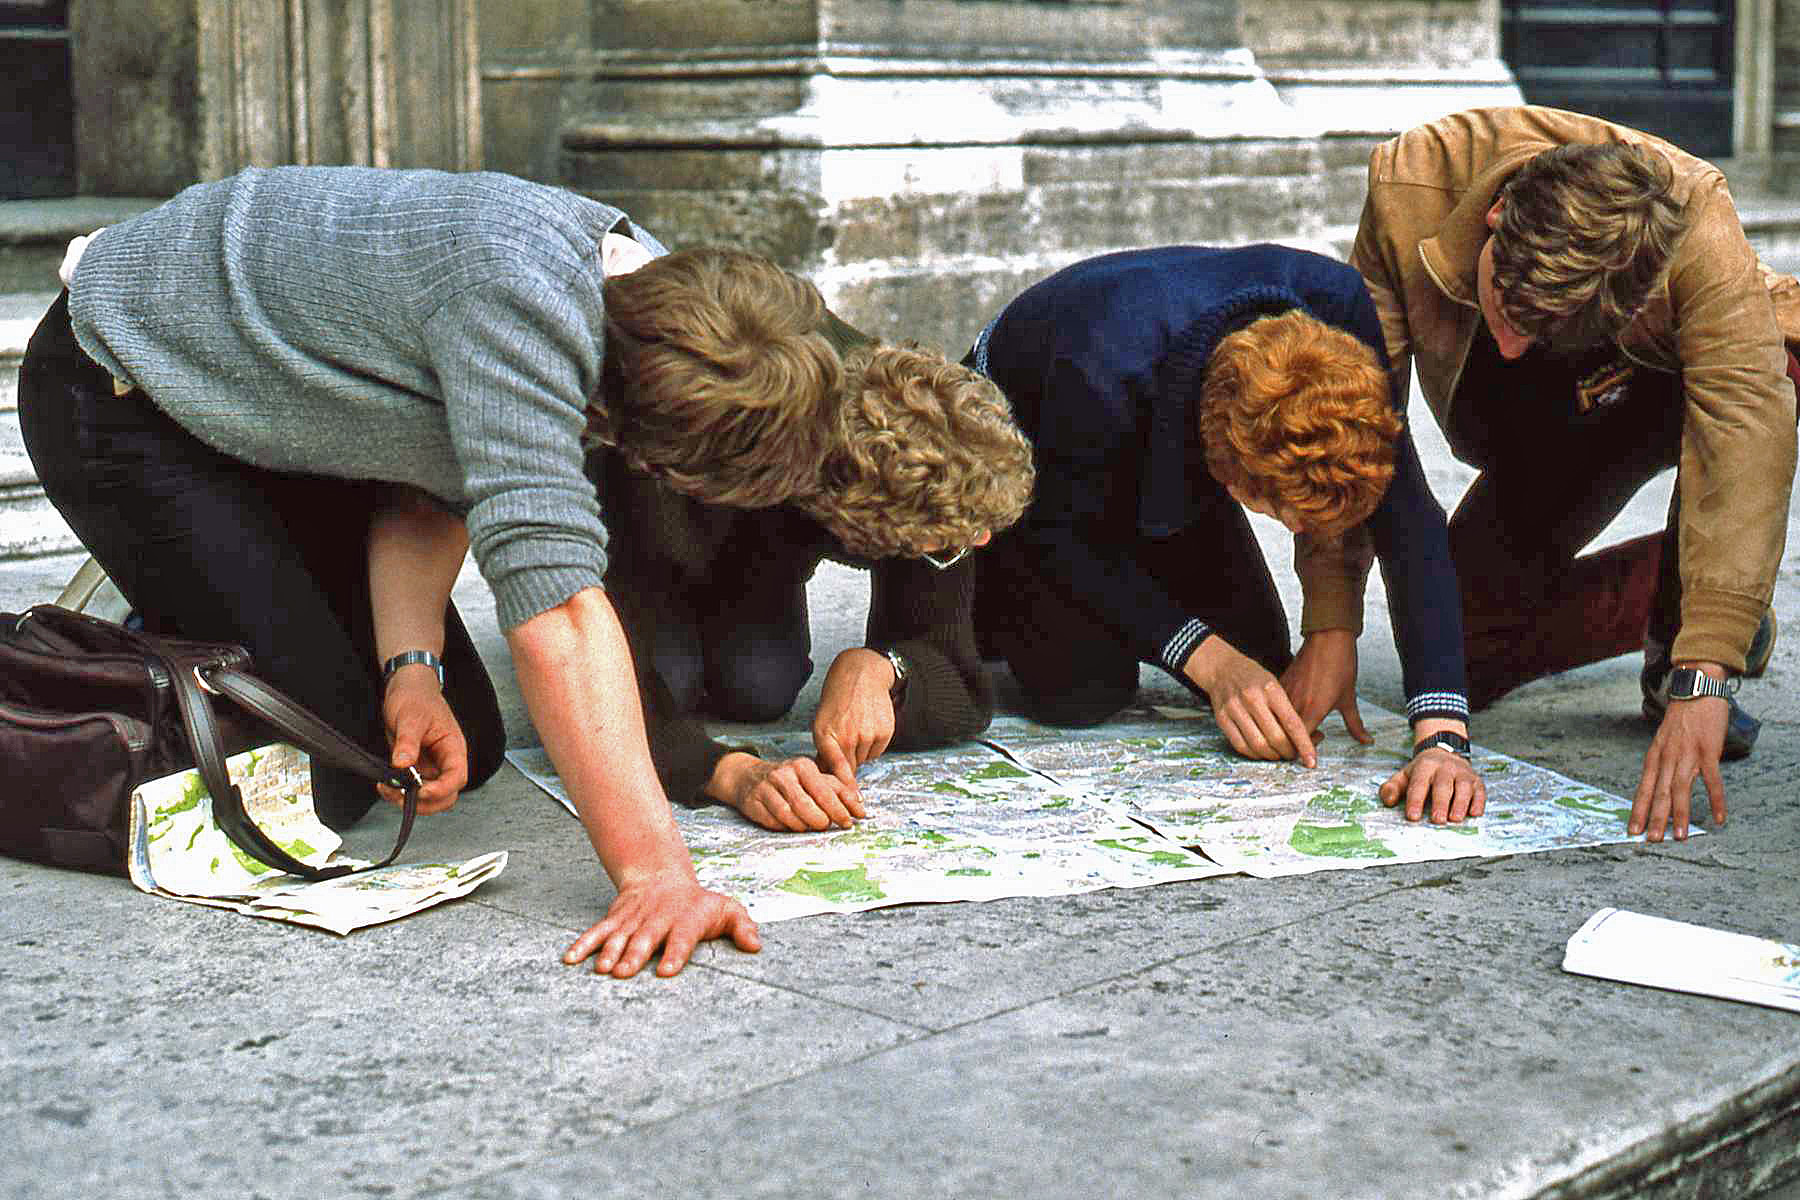 Turisti a Roma: Quando non c'era Google Maps (1985) ......